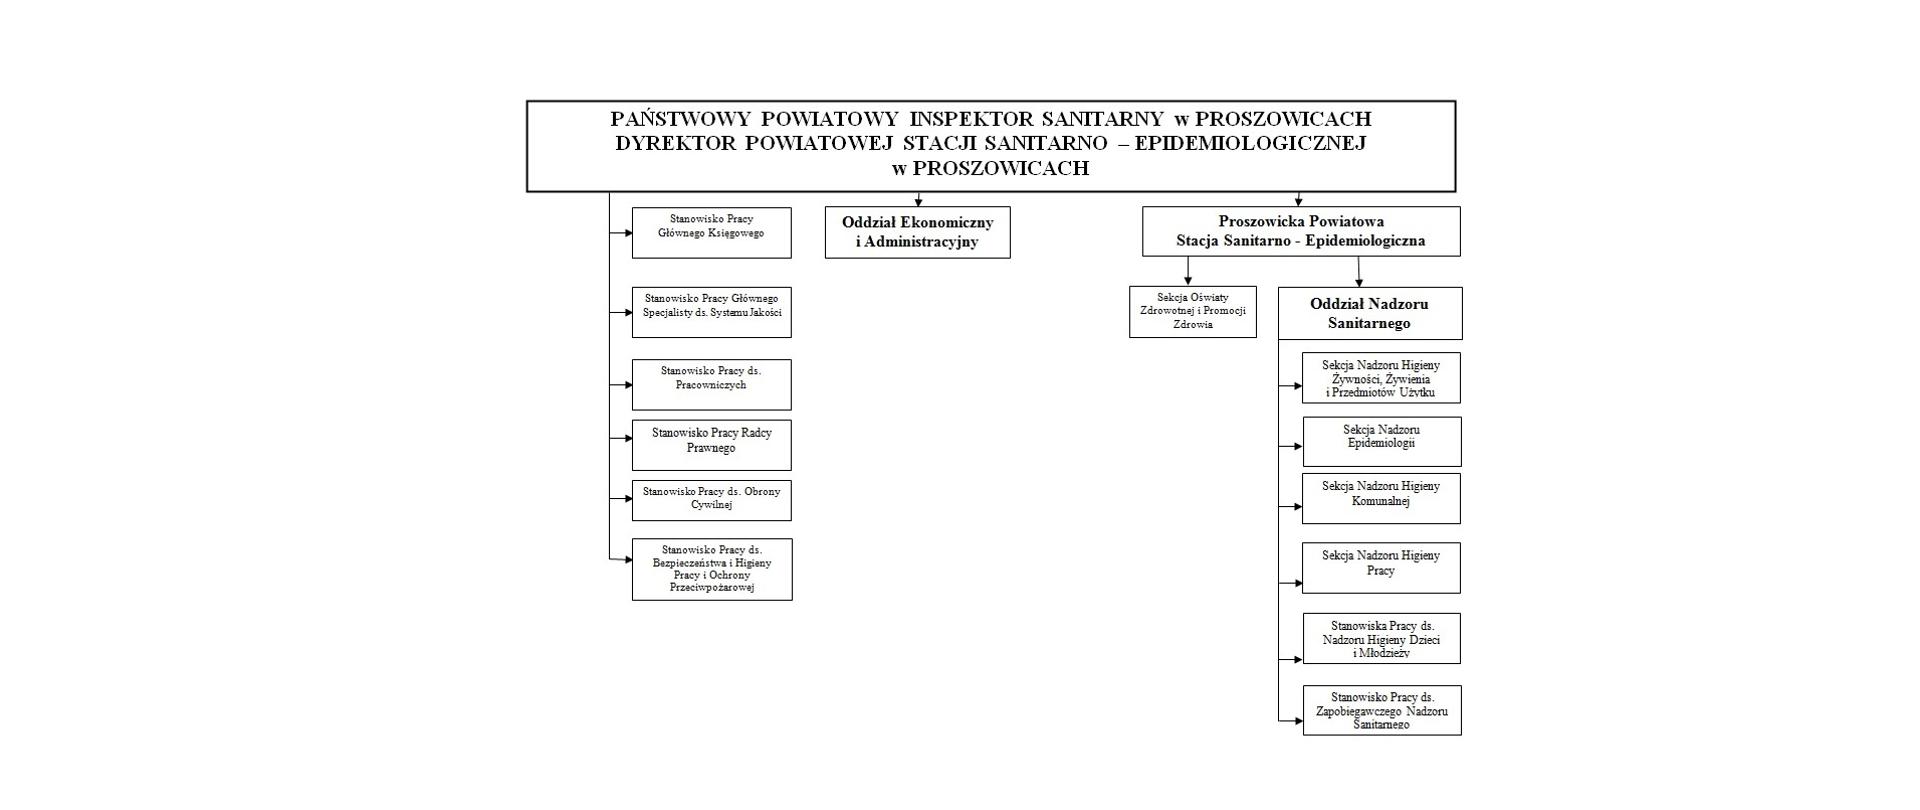 Obraz przedstawia strukturę organizacyjną PPIS w Proszowicach który dzieli się na Oddział Ekonomiczno Administracyjny, Oddział Nadzoru Sanitarnego oraz samodzielne stanowiska Pracy PSSE w Proszowicach